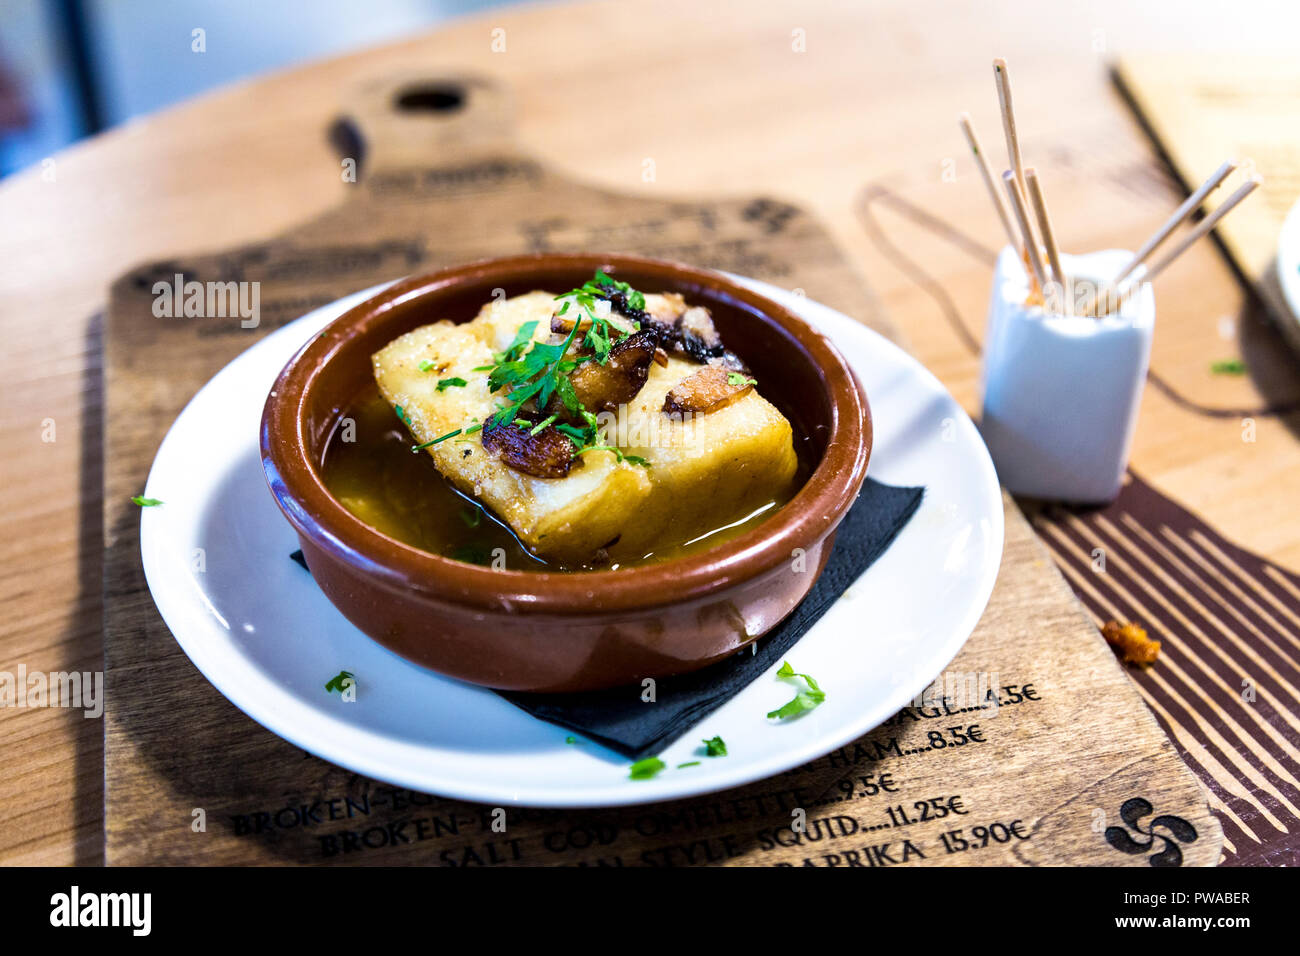 Hake with garlic - a Basque style pintxos dish at El Pintxo de la Barcelona, Barcelona, Spain Stock Photo